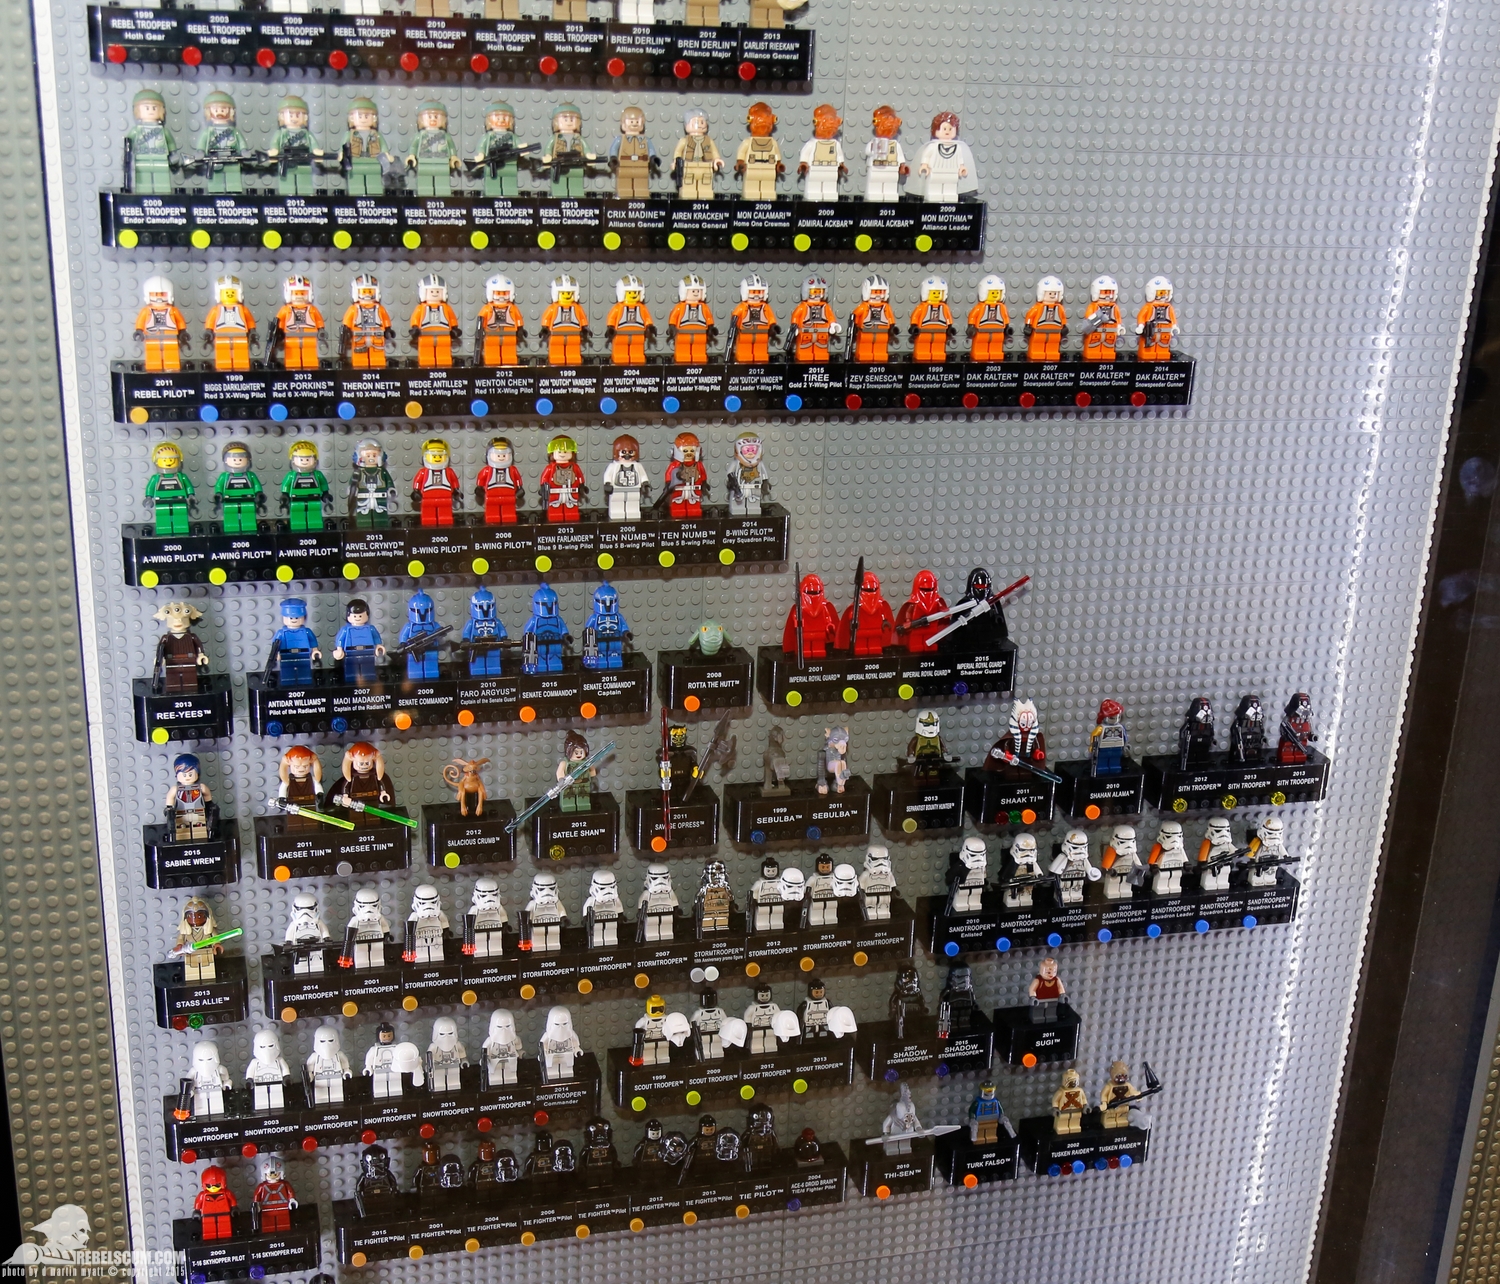 2015-International-Toy-Fair-Star-Wars-Lego-164.jpg